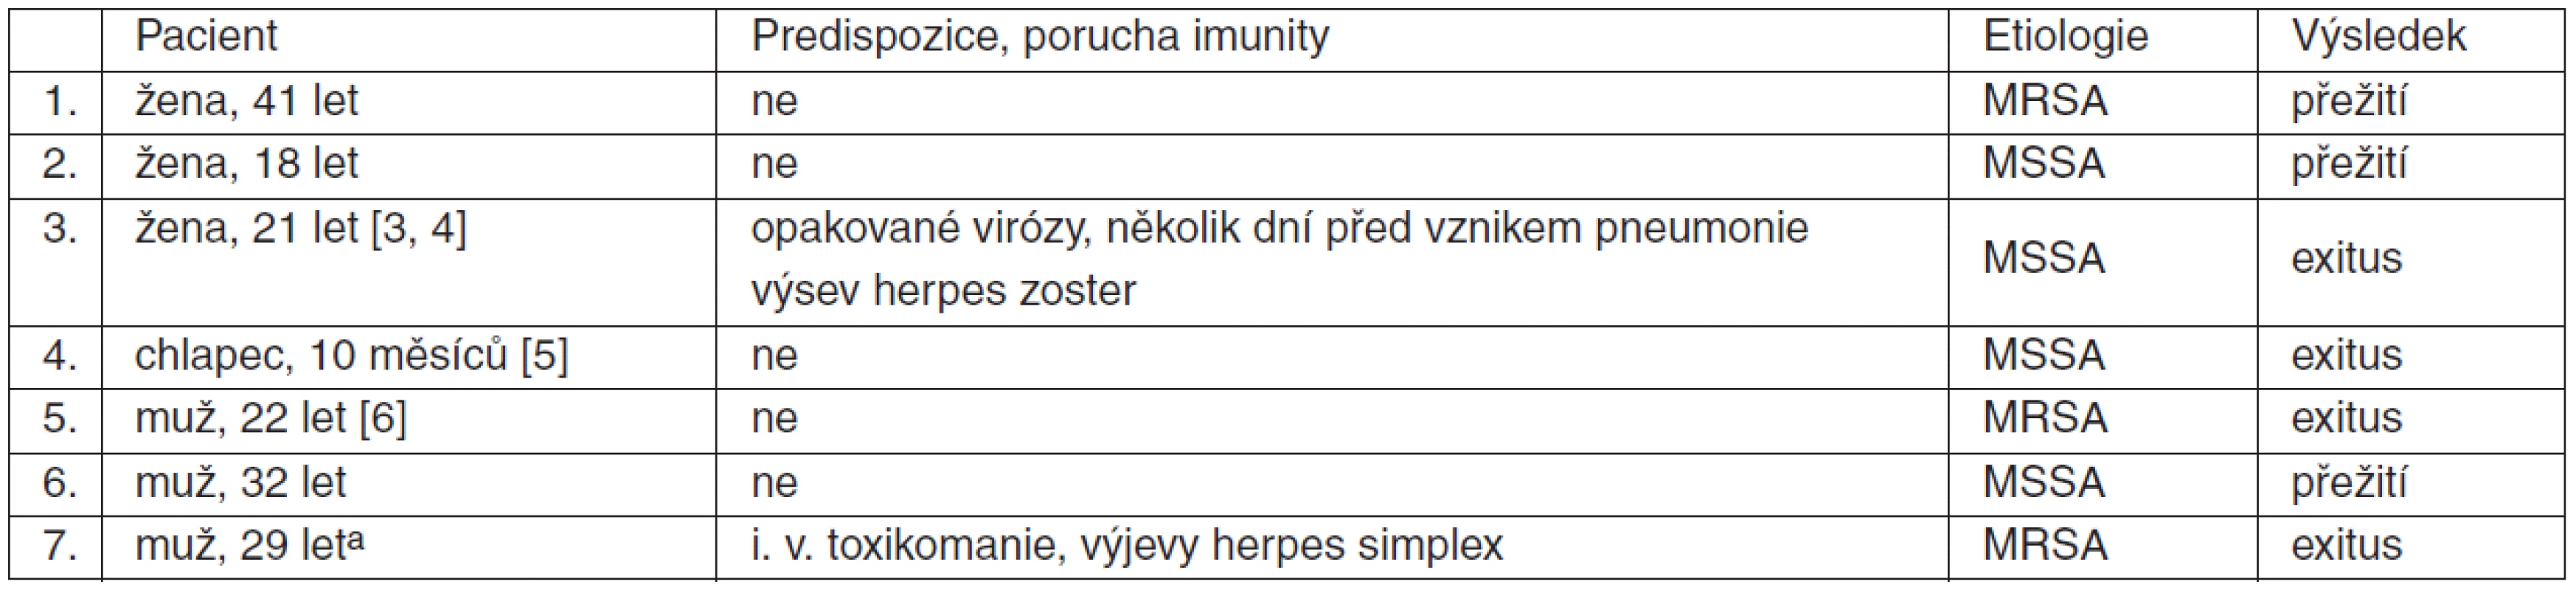 Případy pneumonie způsobené S. aureus s produkcí PVL v ČR od prosince 2007